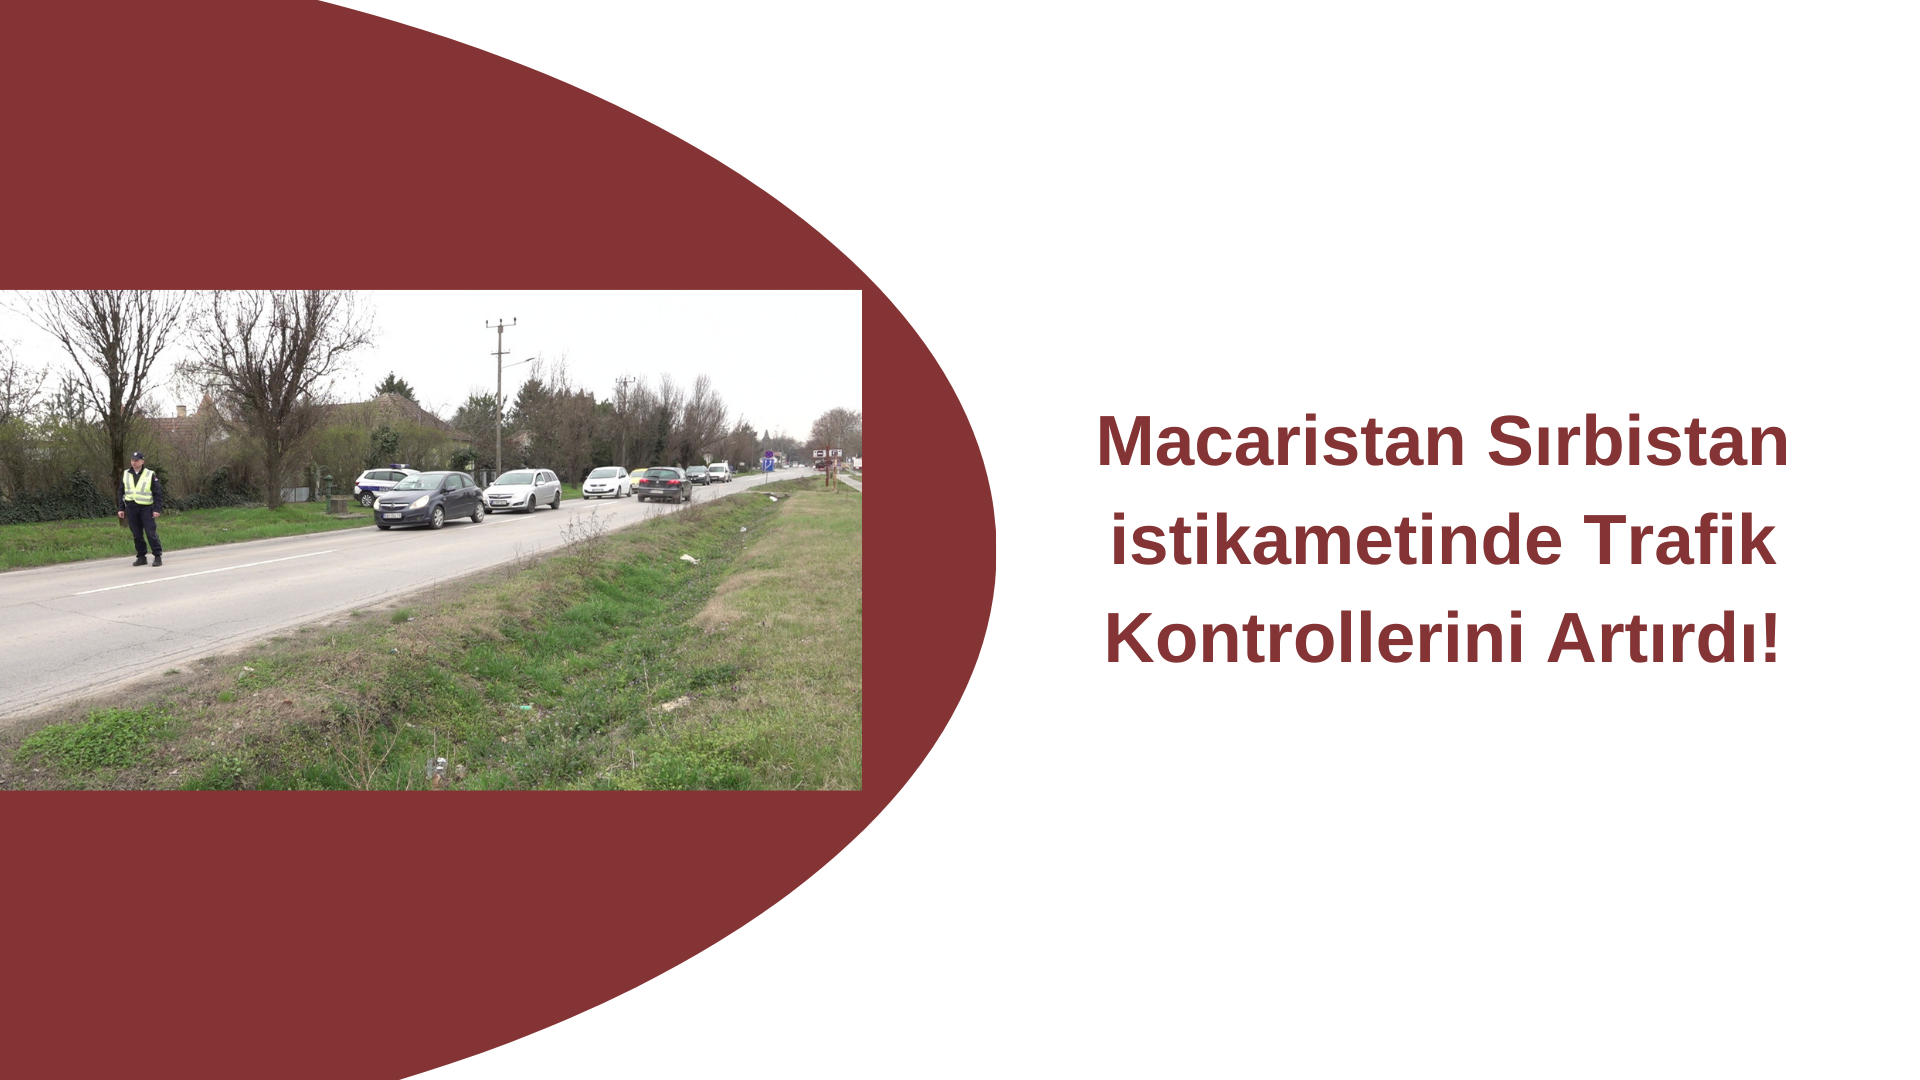 Macaristan Sırbistan istikametinde Trafik Kontrollerini Artırdı!